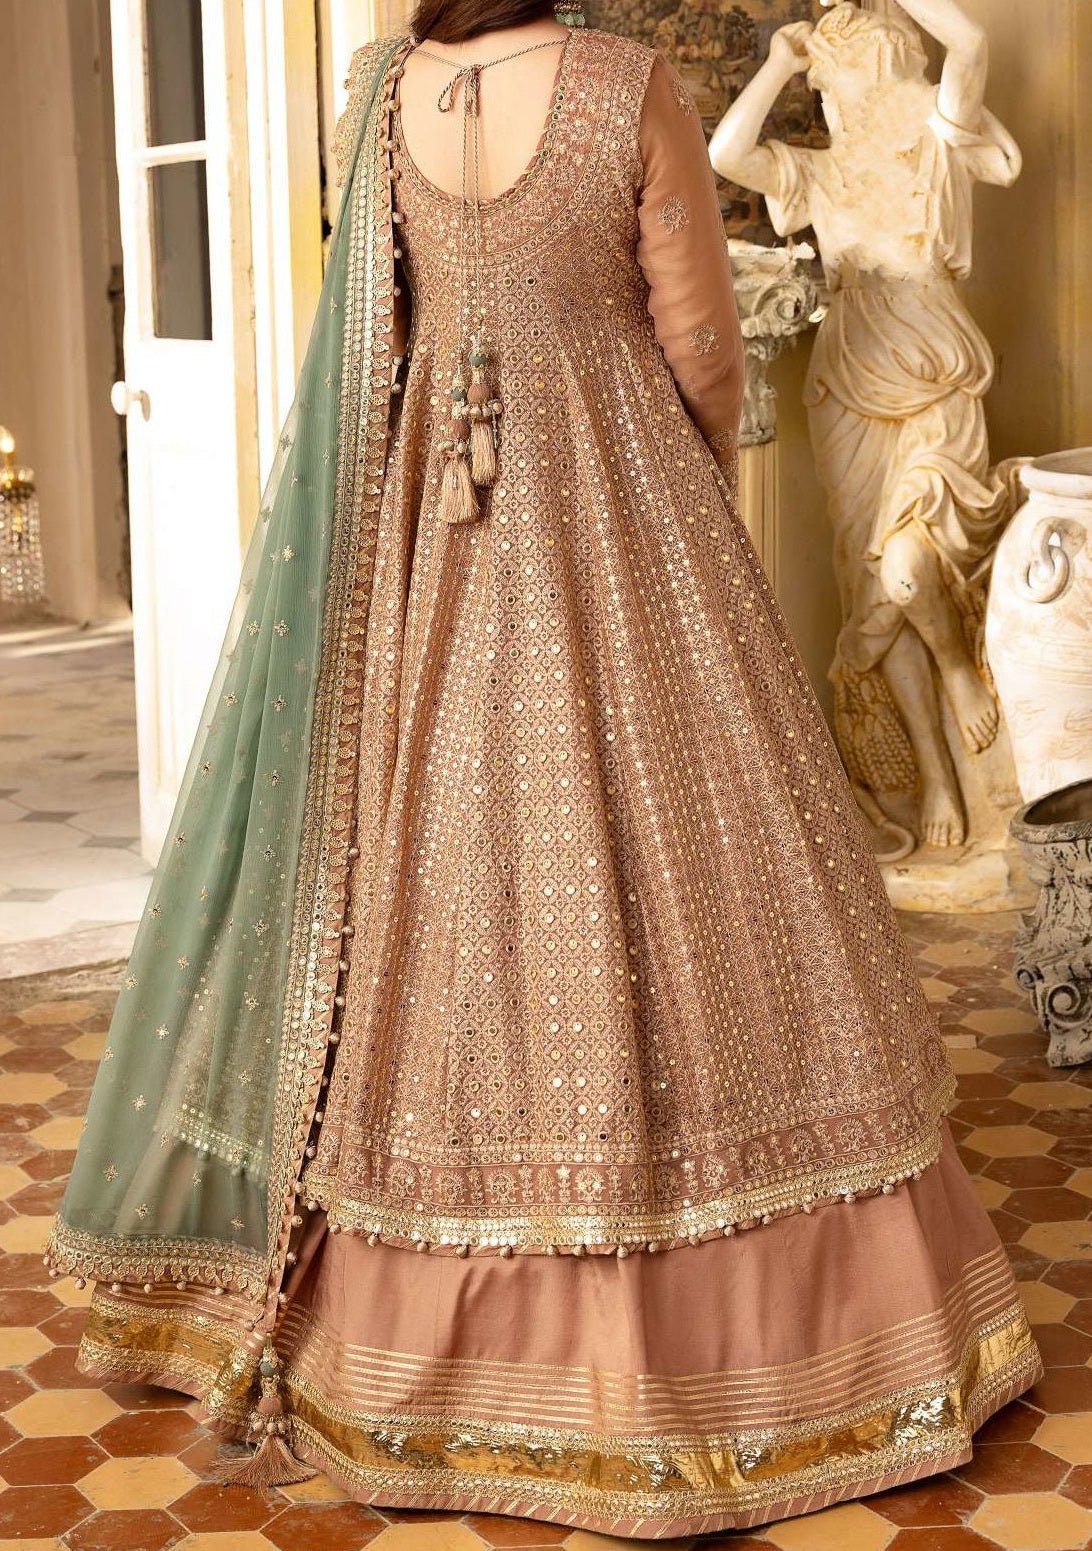 Green Lehenga Suit Peplum Long Top Choli Indian Ethnic Wedding Dress  Embroidery | eBay